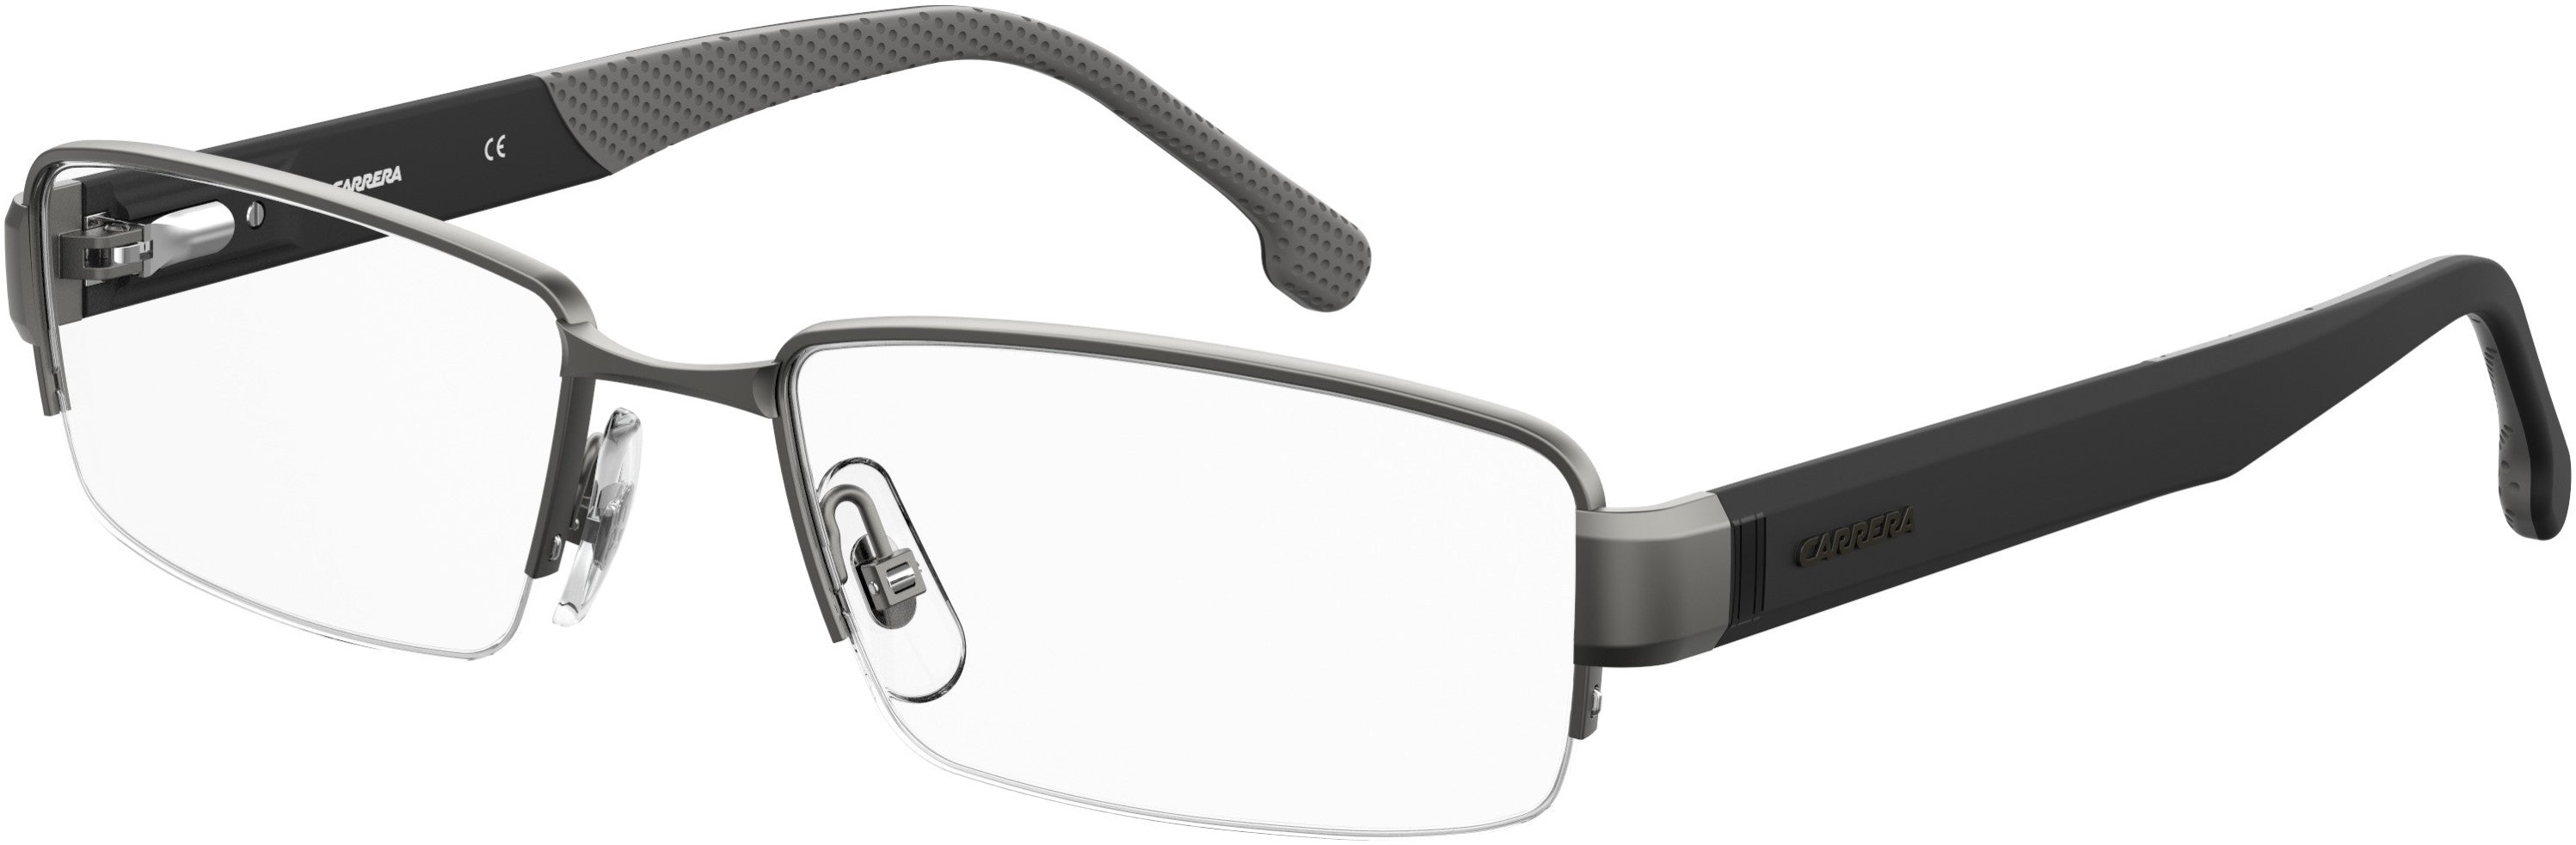  Carrera 8850 Rectangular Eyeglasses 0R80-0R80  Semi Matte Dark Ruthenium (00 Demo Lens)